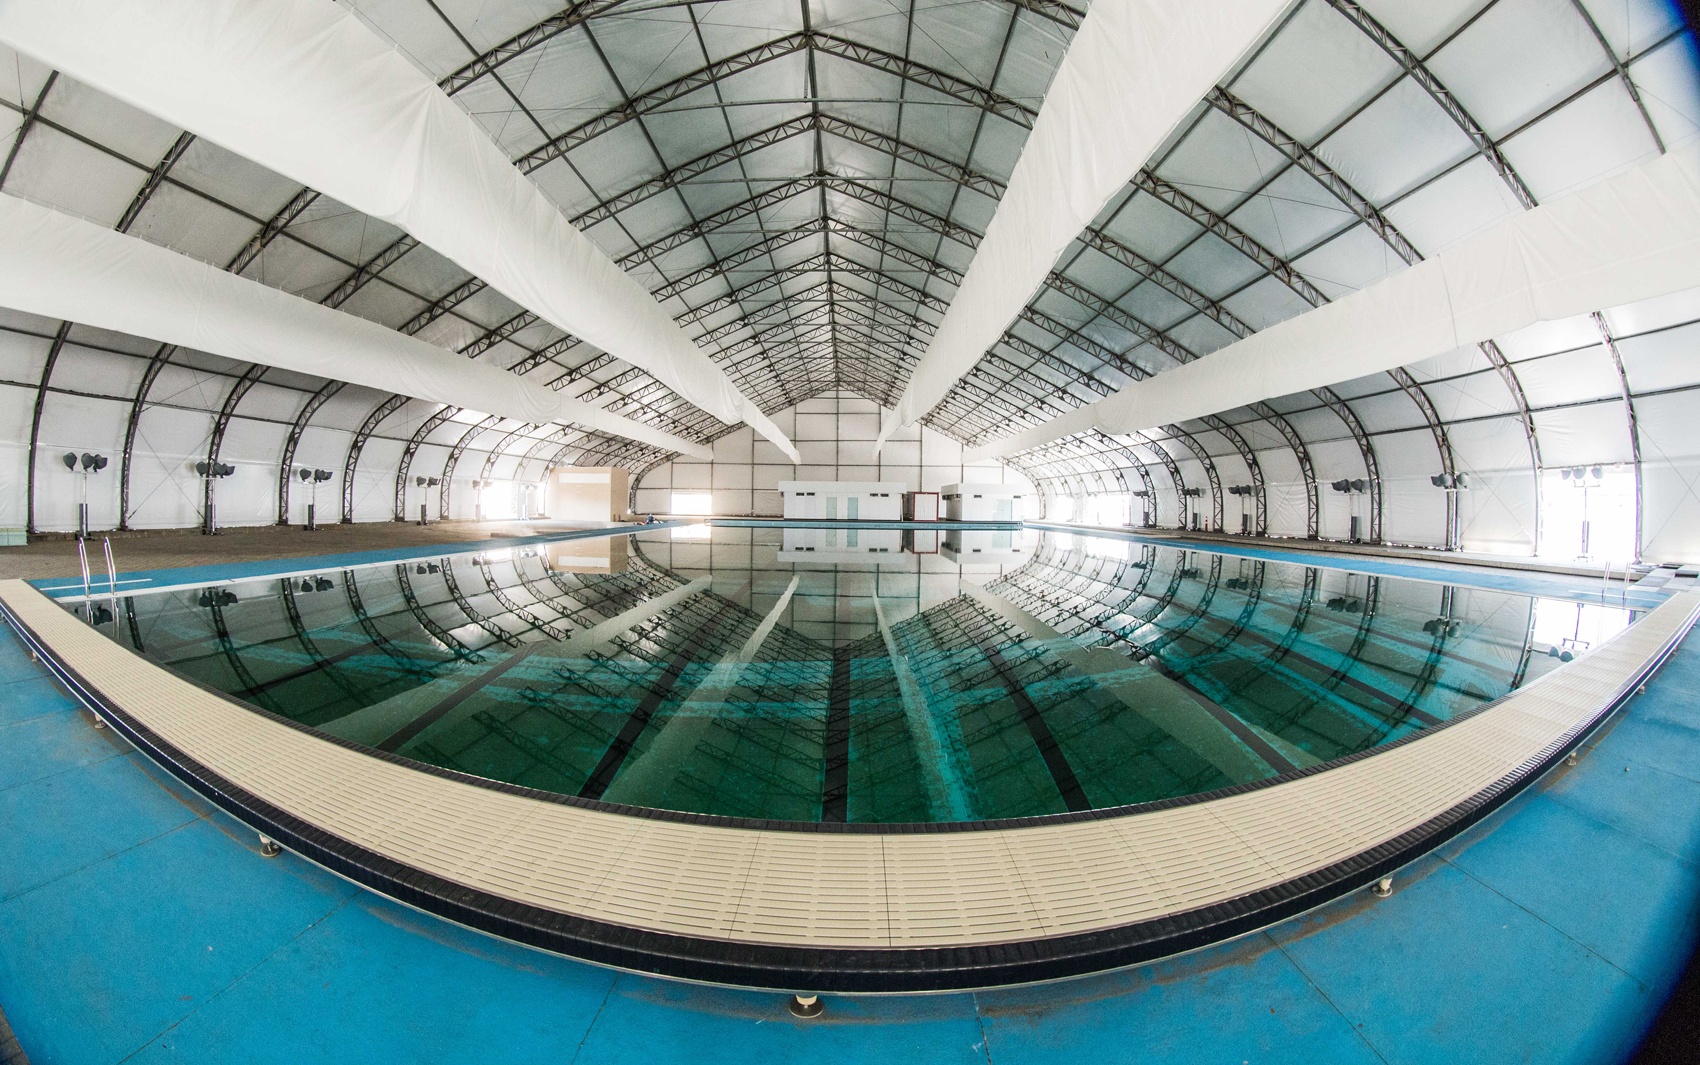 10_piscina-de-aquecimento-estidio-aquitico-renato-sette-camara-prefeitura-do-rio-4.jpg